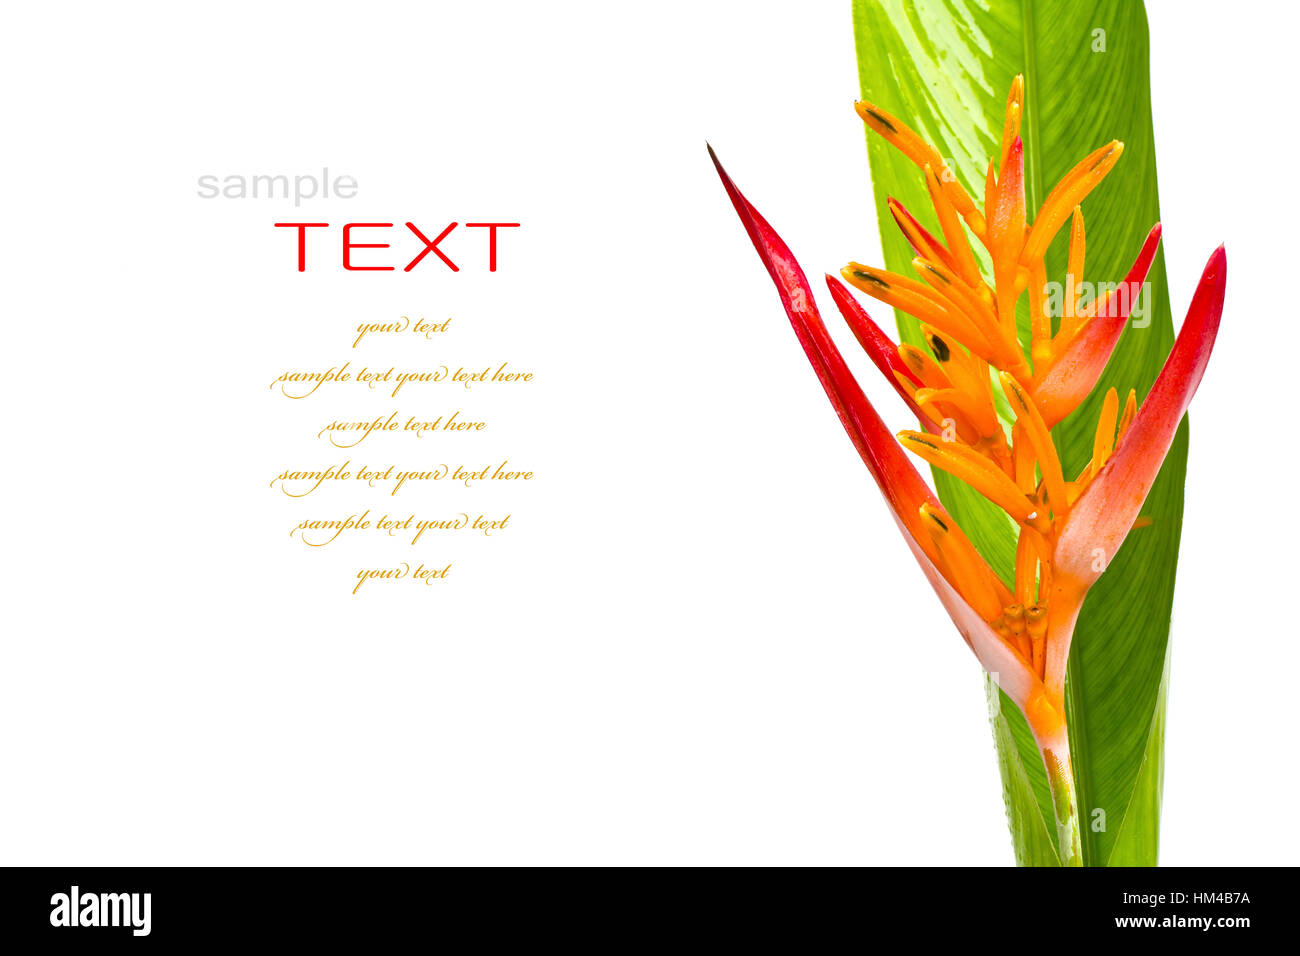 Beautiful orange flowers (Bird of paradise) isolated on white background Stock Photo